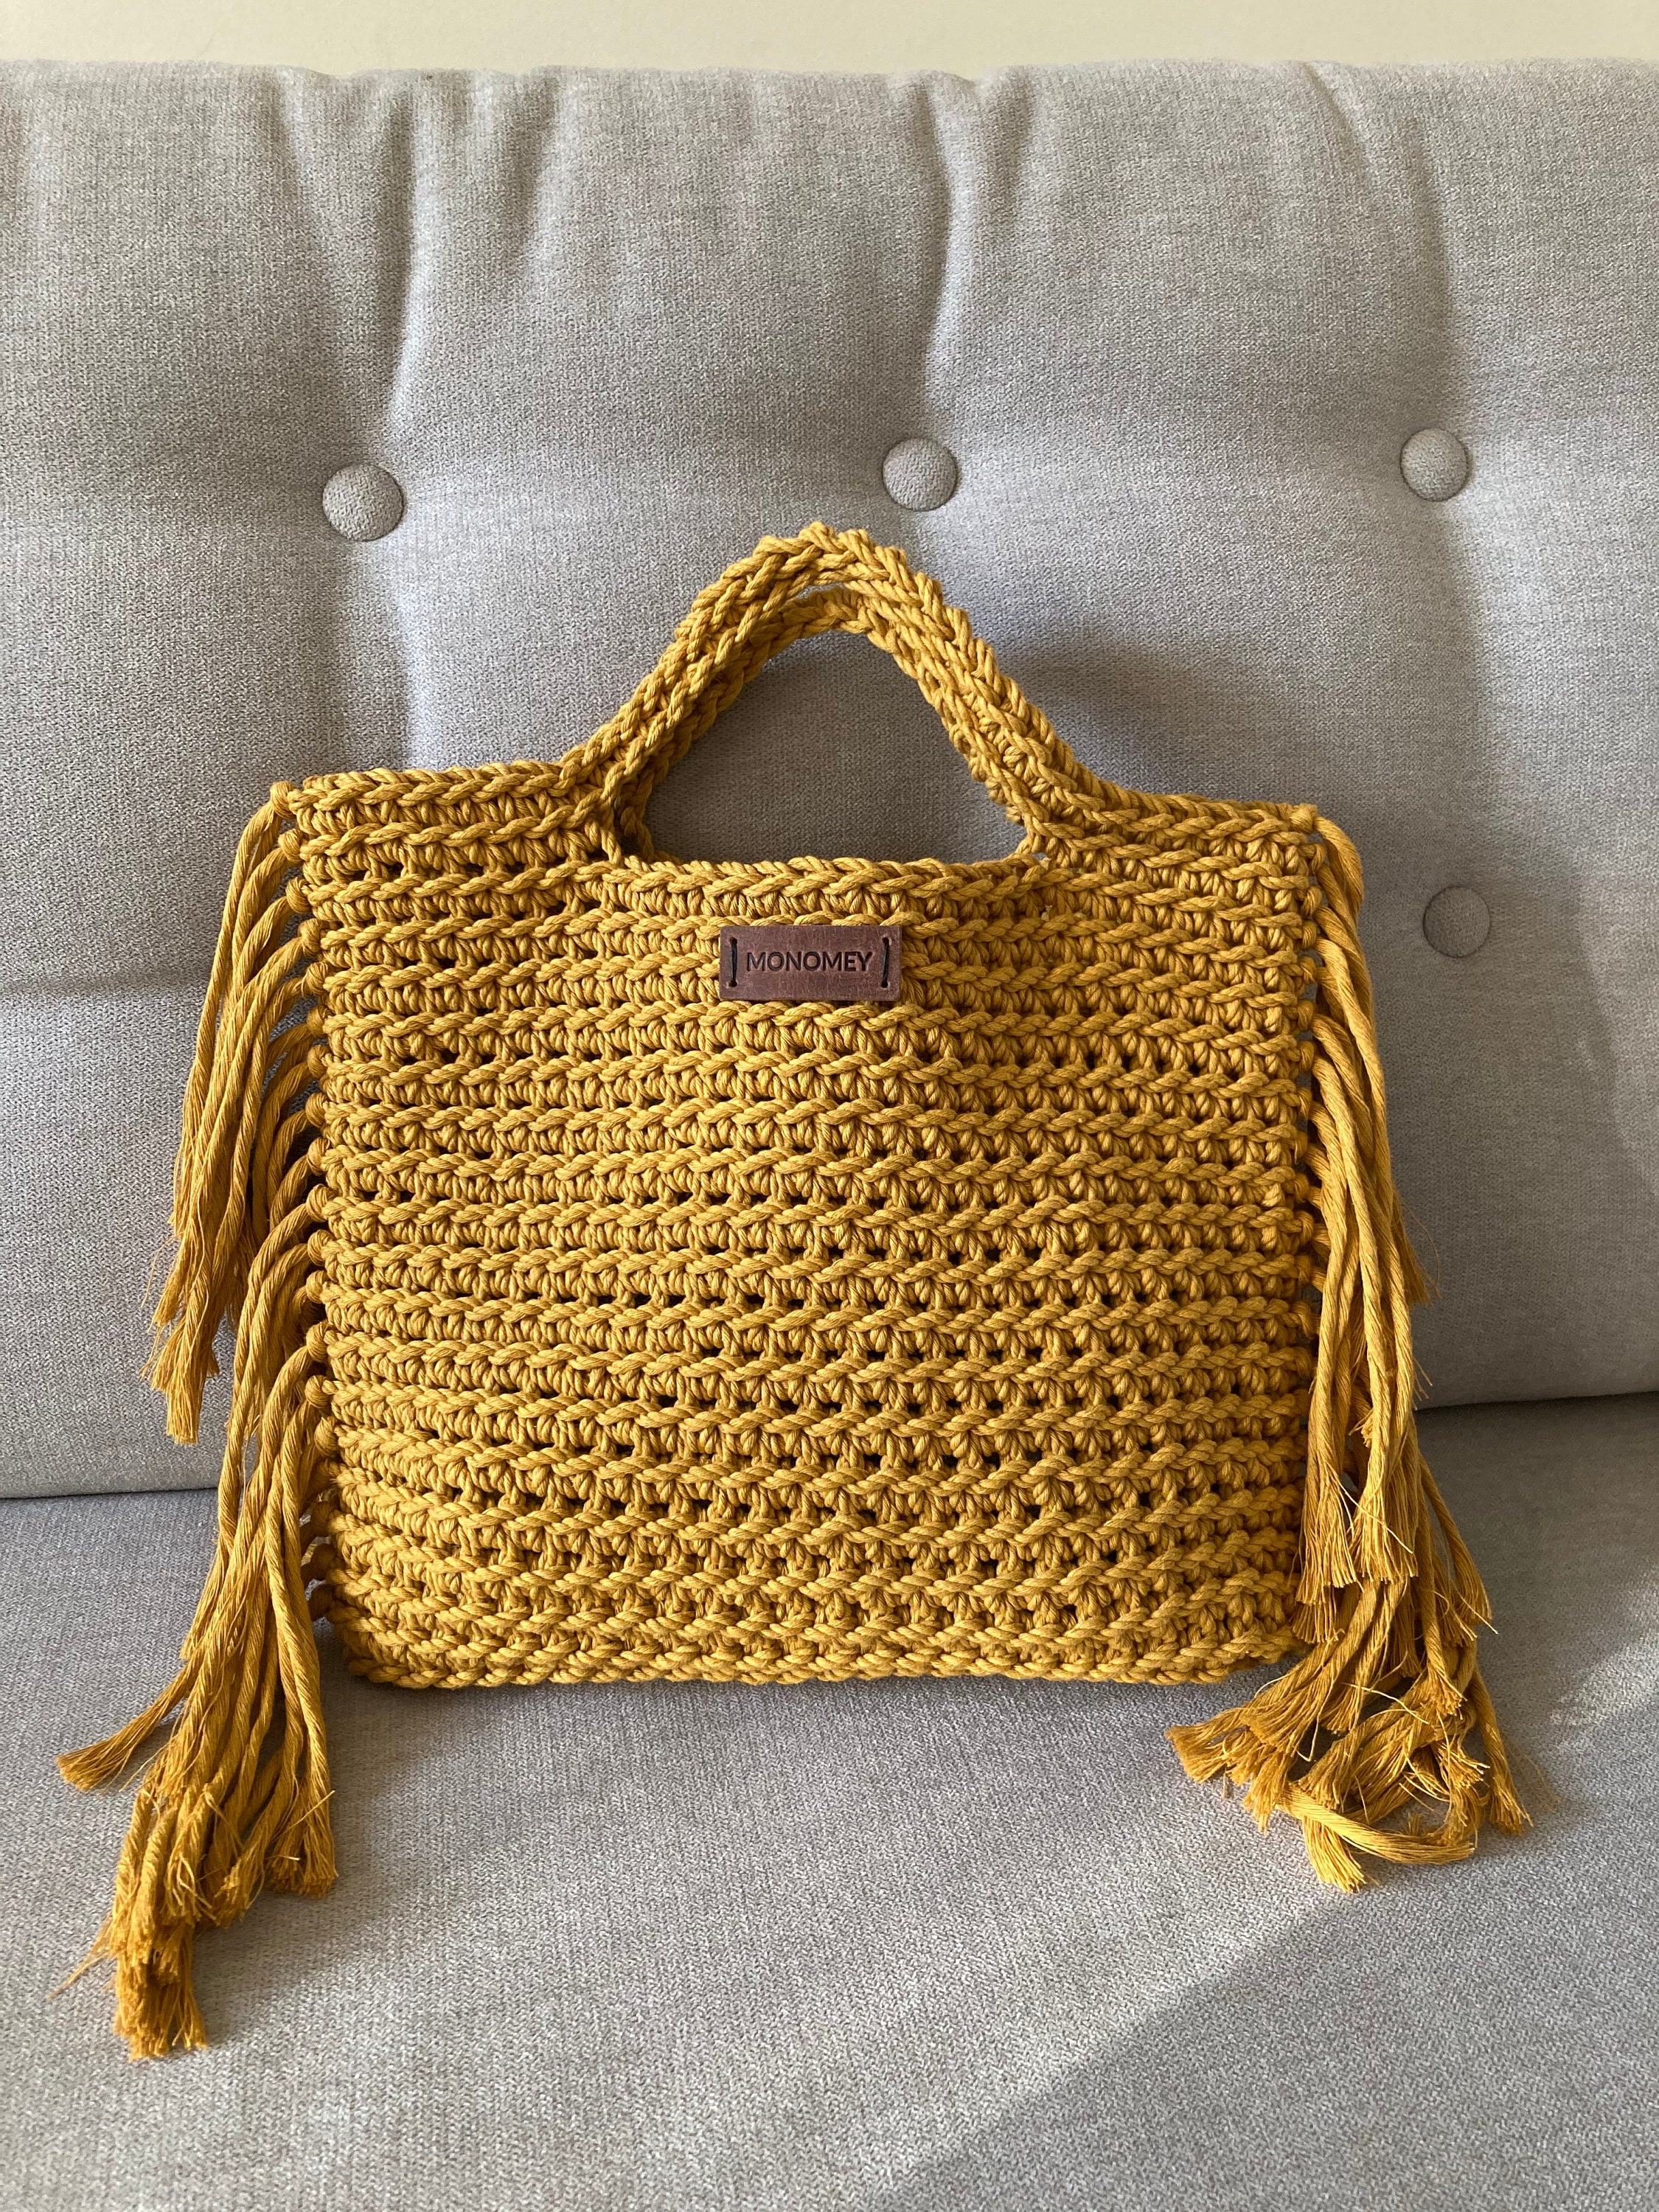 Crochet handbag pattern crochet boho bag pattern handbag | Etsy